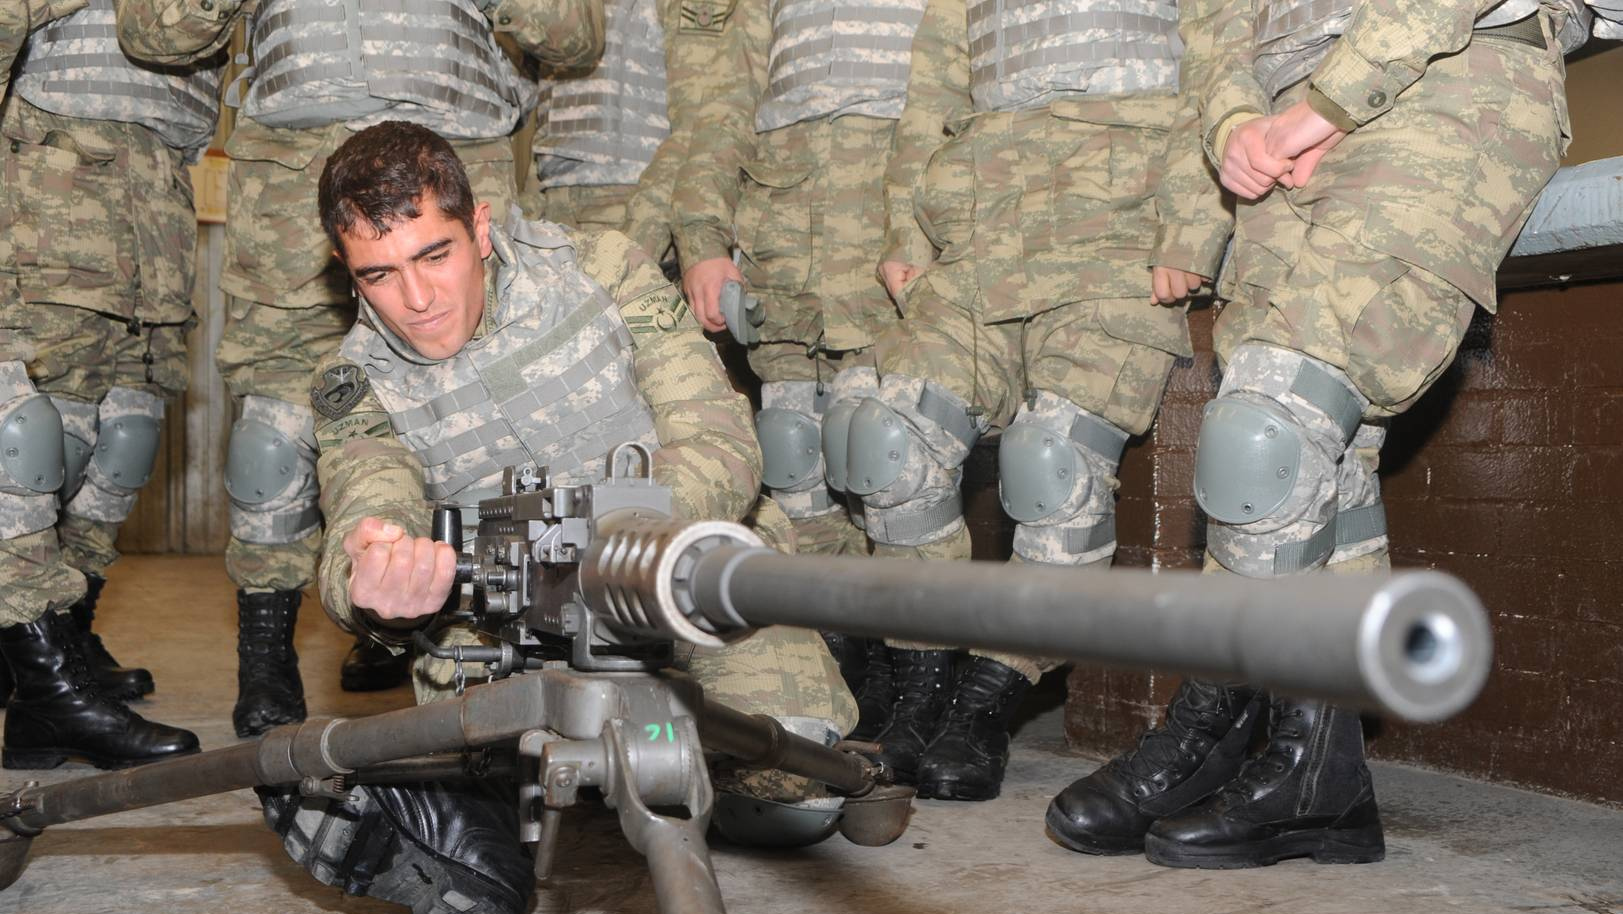 Турецкие солдаты с американским крупнокалиберный пулемётом M2 системы Джона Браунинга